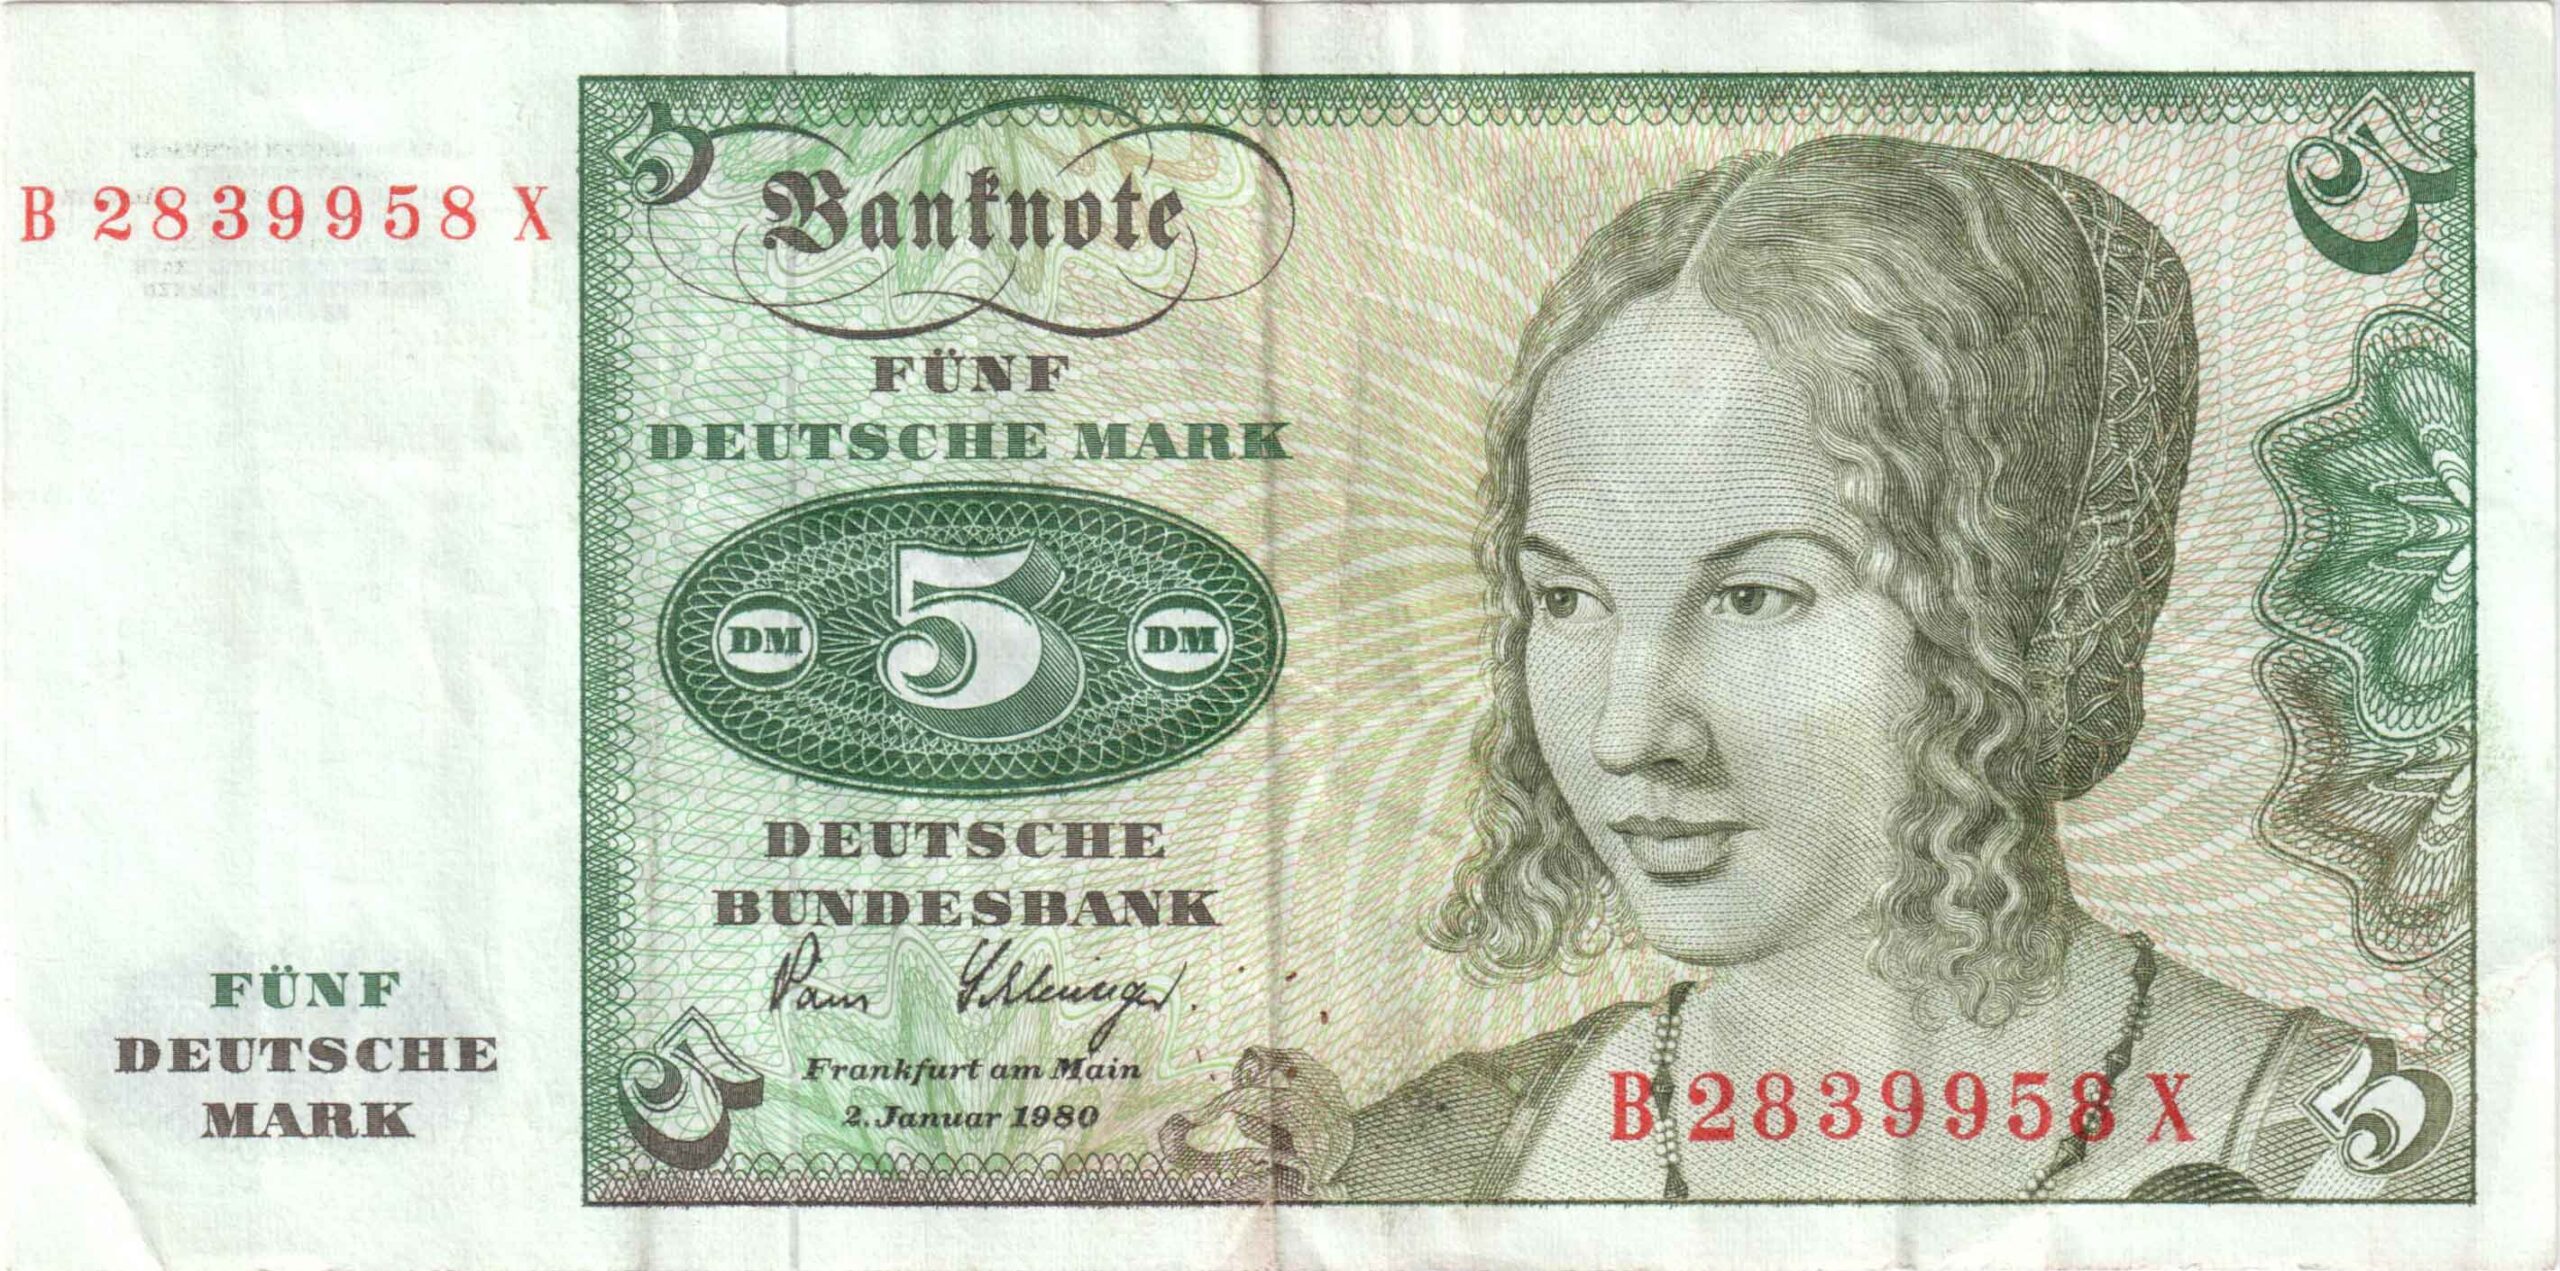 Fünfmarkschein der Deutsche Bundesbank von 1980, erste Serie, Ro. 285, Vorderseite